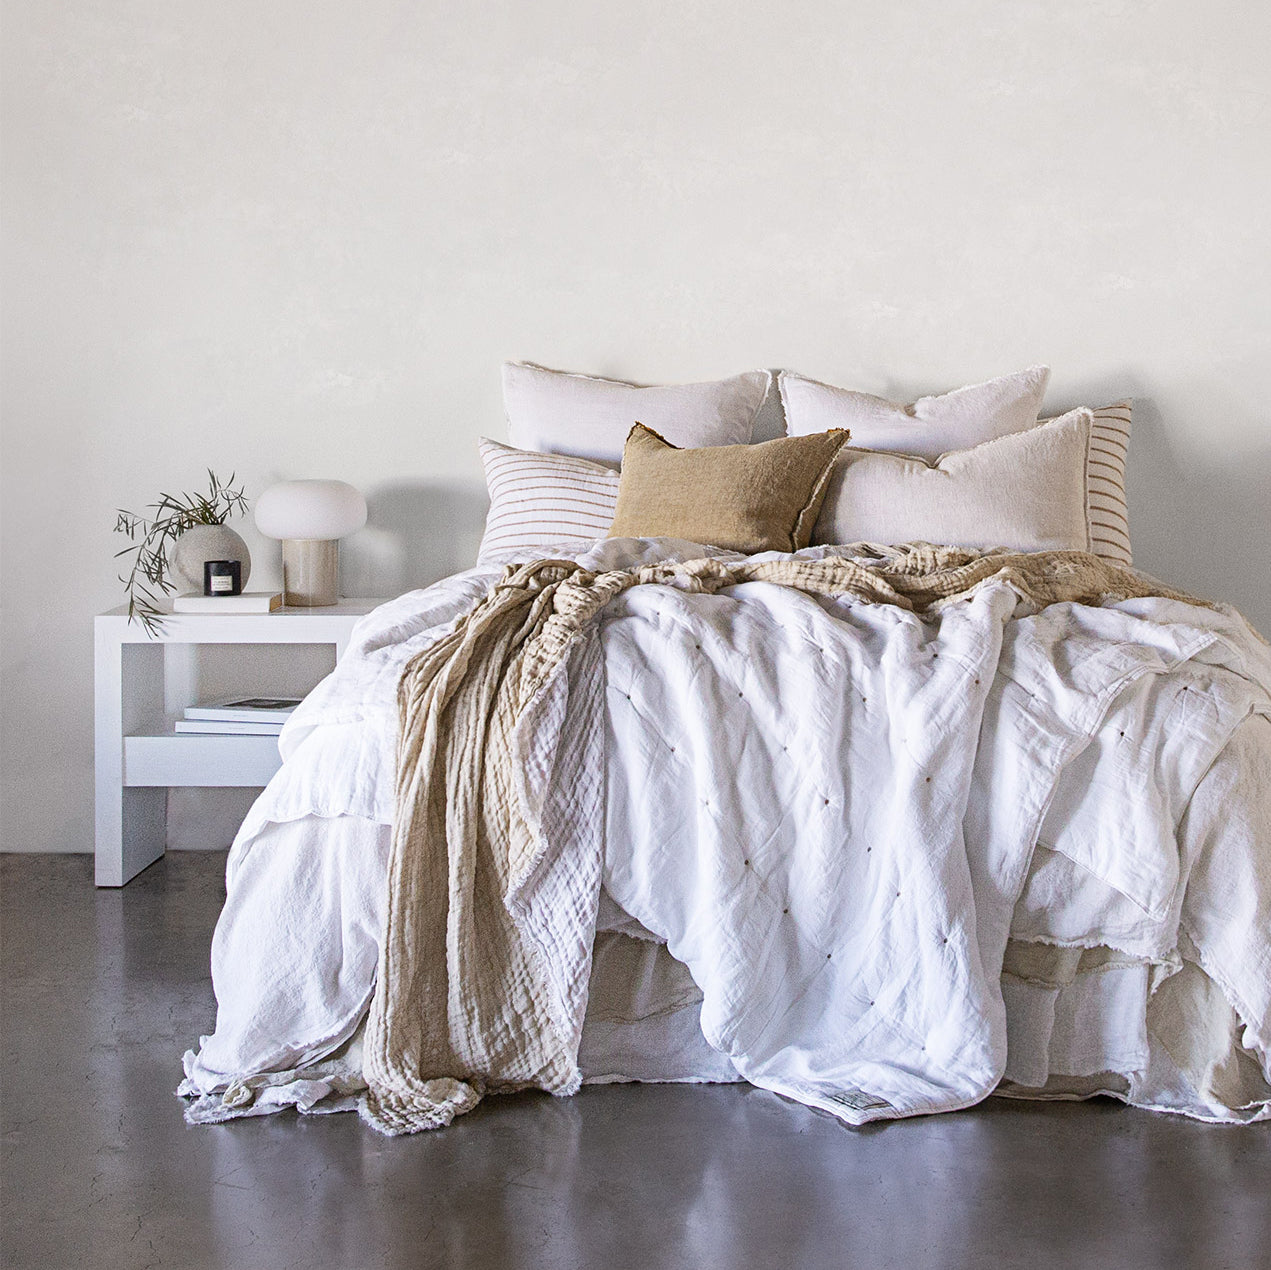 European Linen Pillowcases | Pale Stone | Hale Mercantile Co.